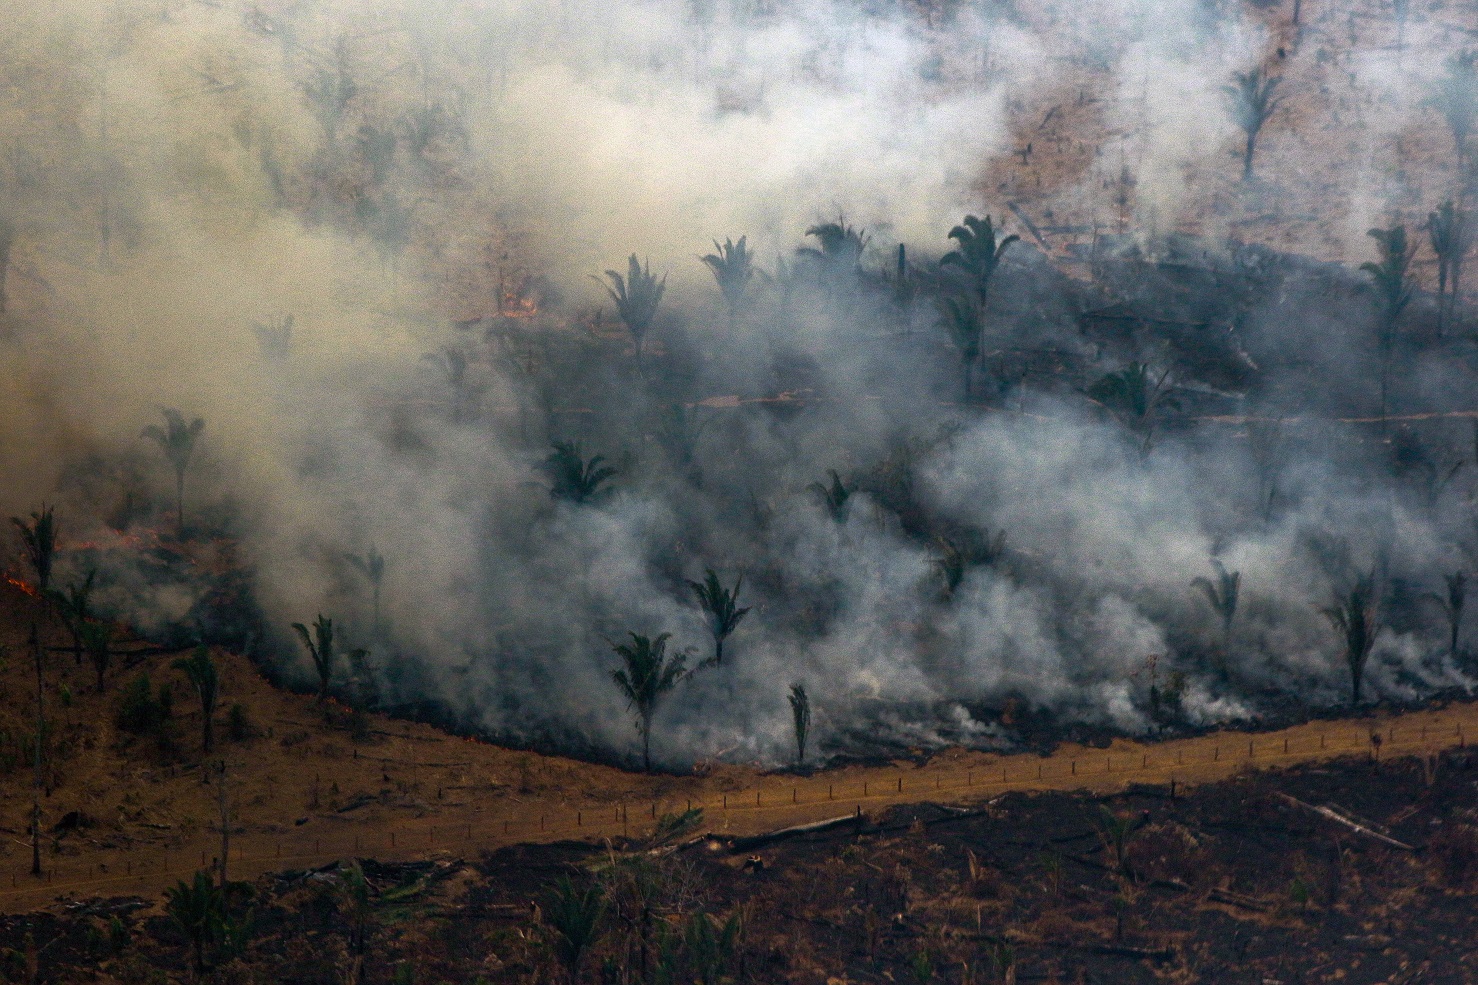 Imagem aérea dos incêndios na região de Boca do Acre, na Amazônia, capturada no último fim de semana. Foto Lula Sampaio/AFP